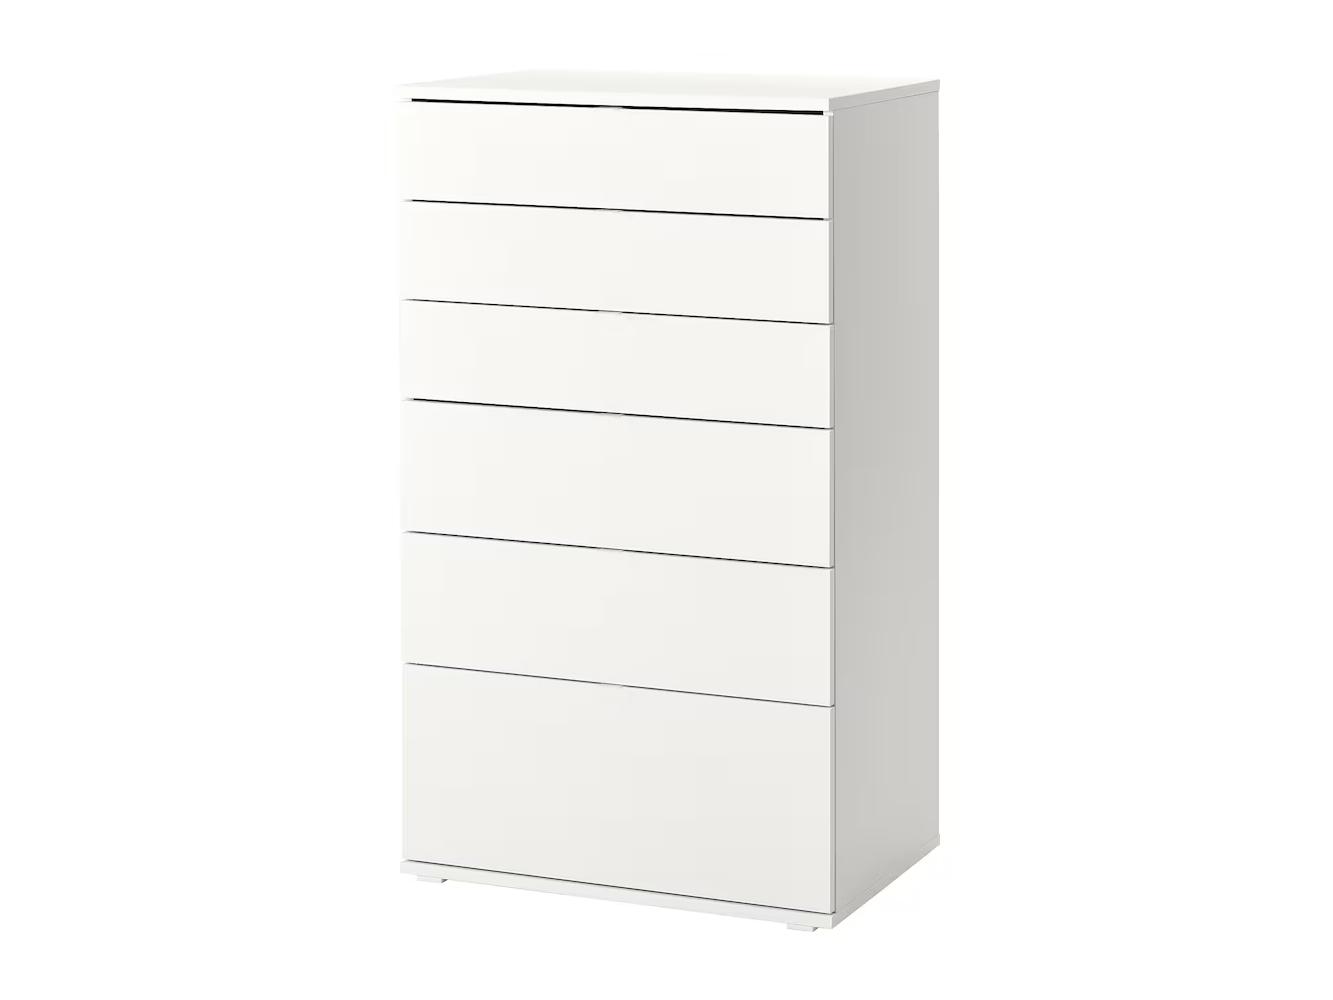 Комод Вихалс 115 white ИКЕА (IKEA) изображение товара